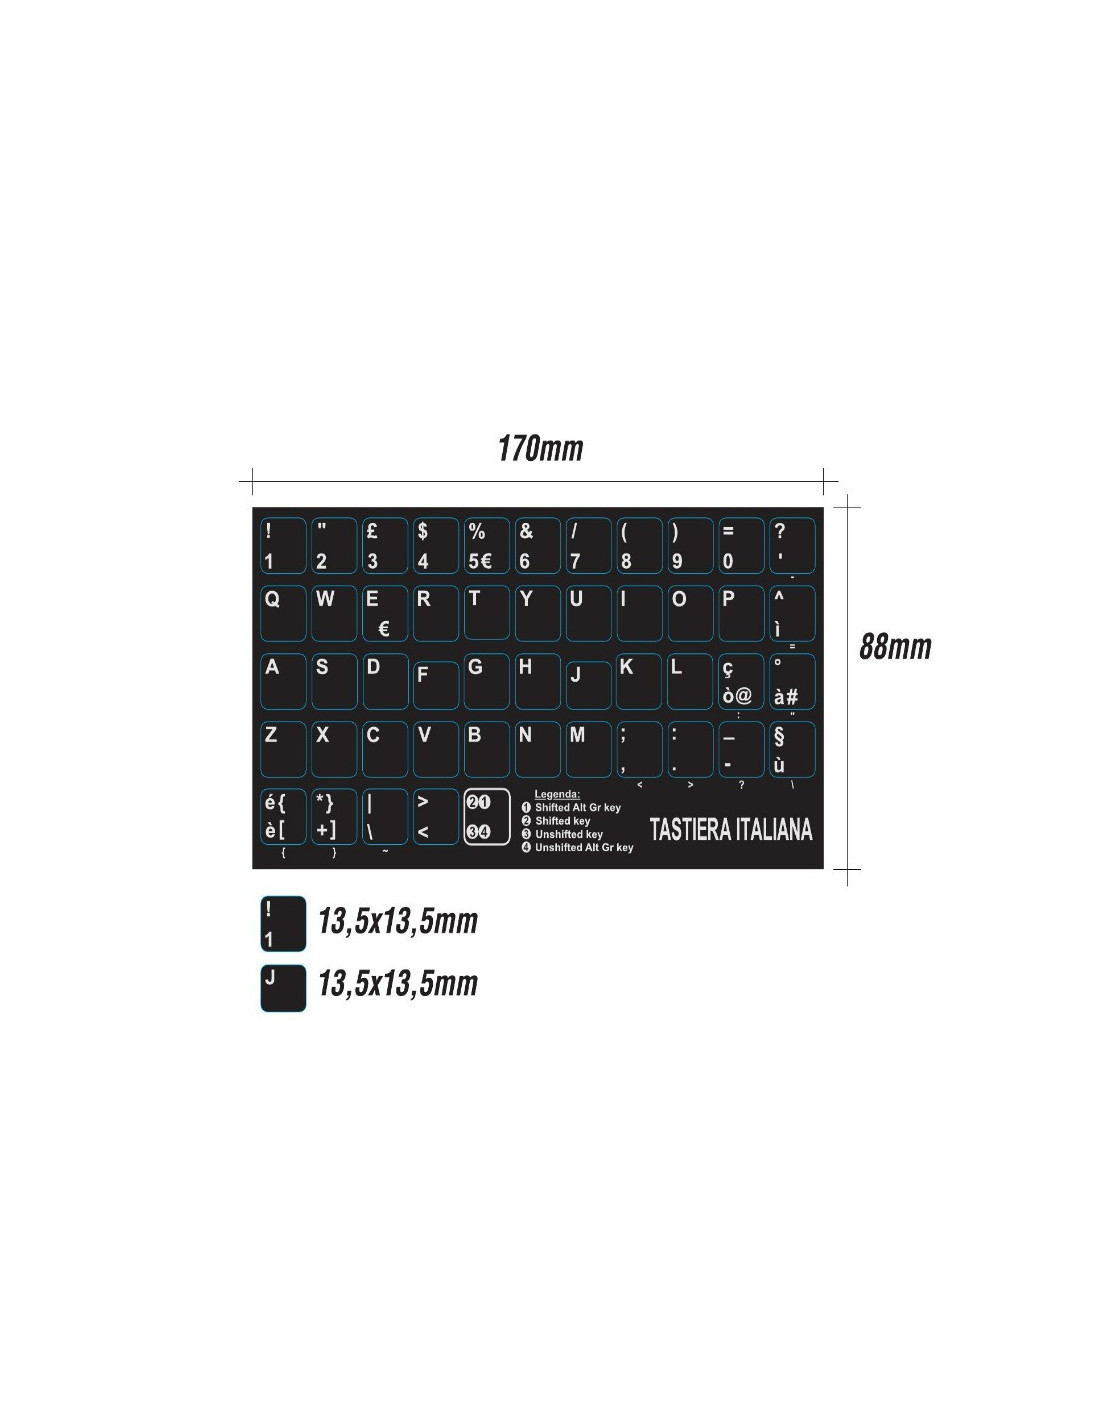 Tastiera adesiva lettere stickers tasti nere lettere bianche tasti grandi  13,5 x 13,5mm